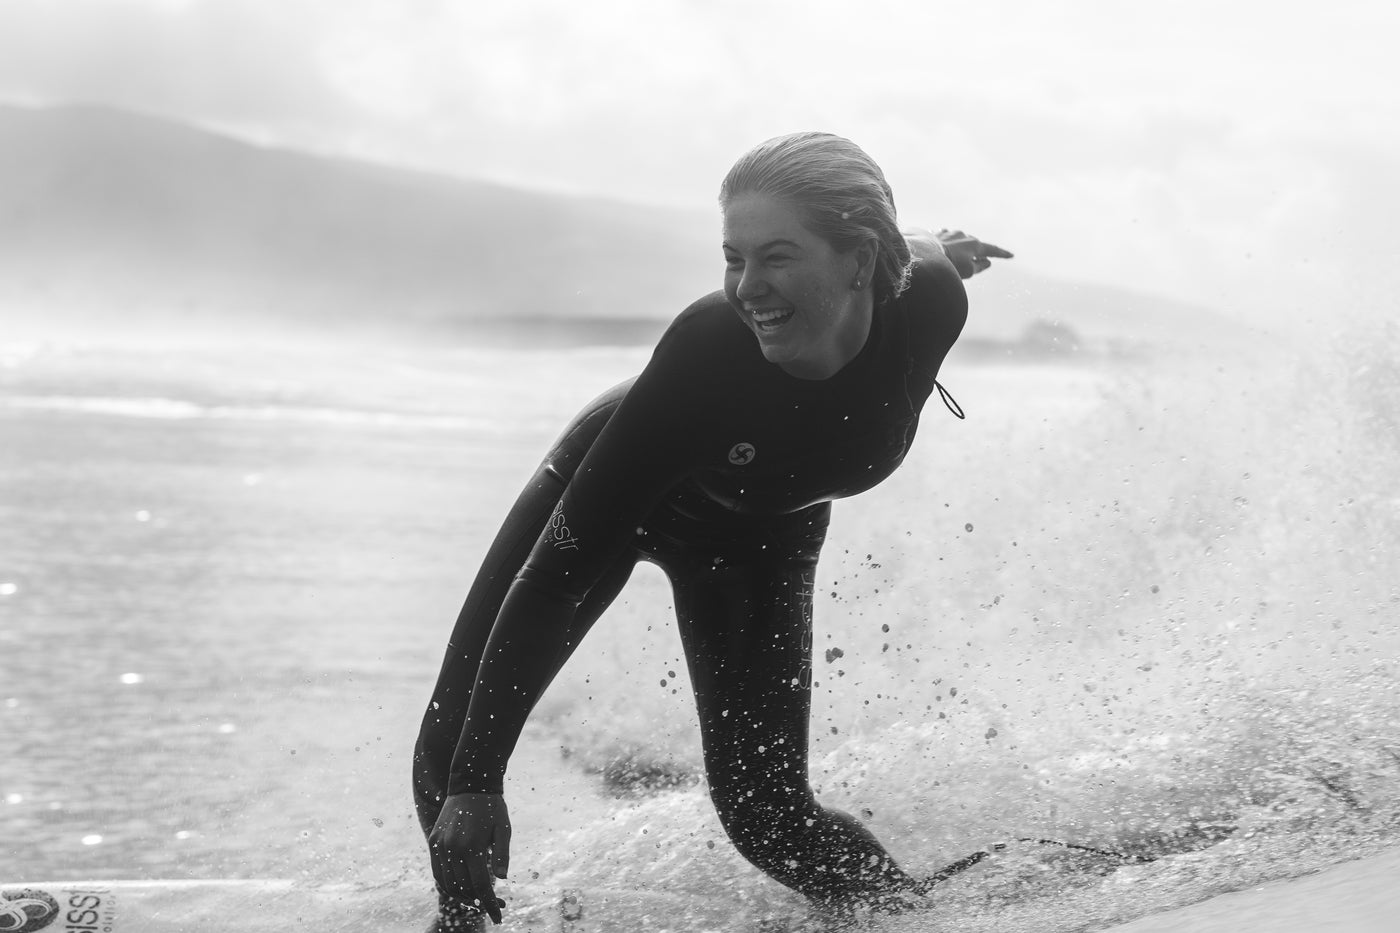 Sisstrevolution - Womens Surf Brand